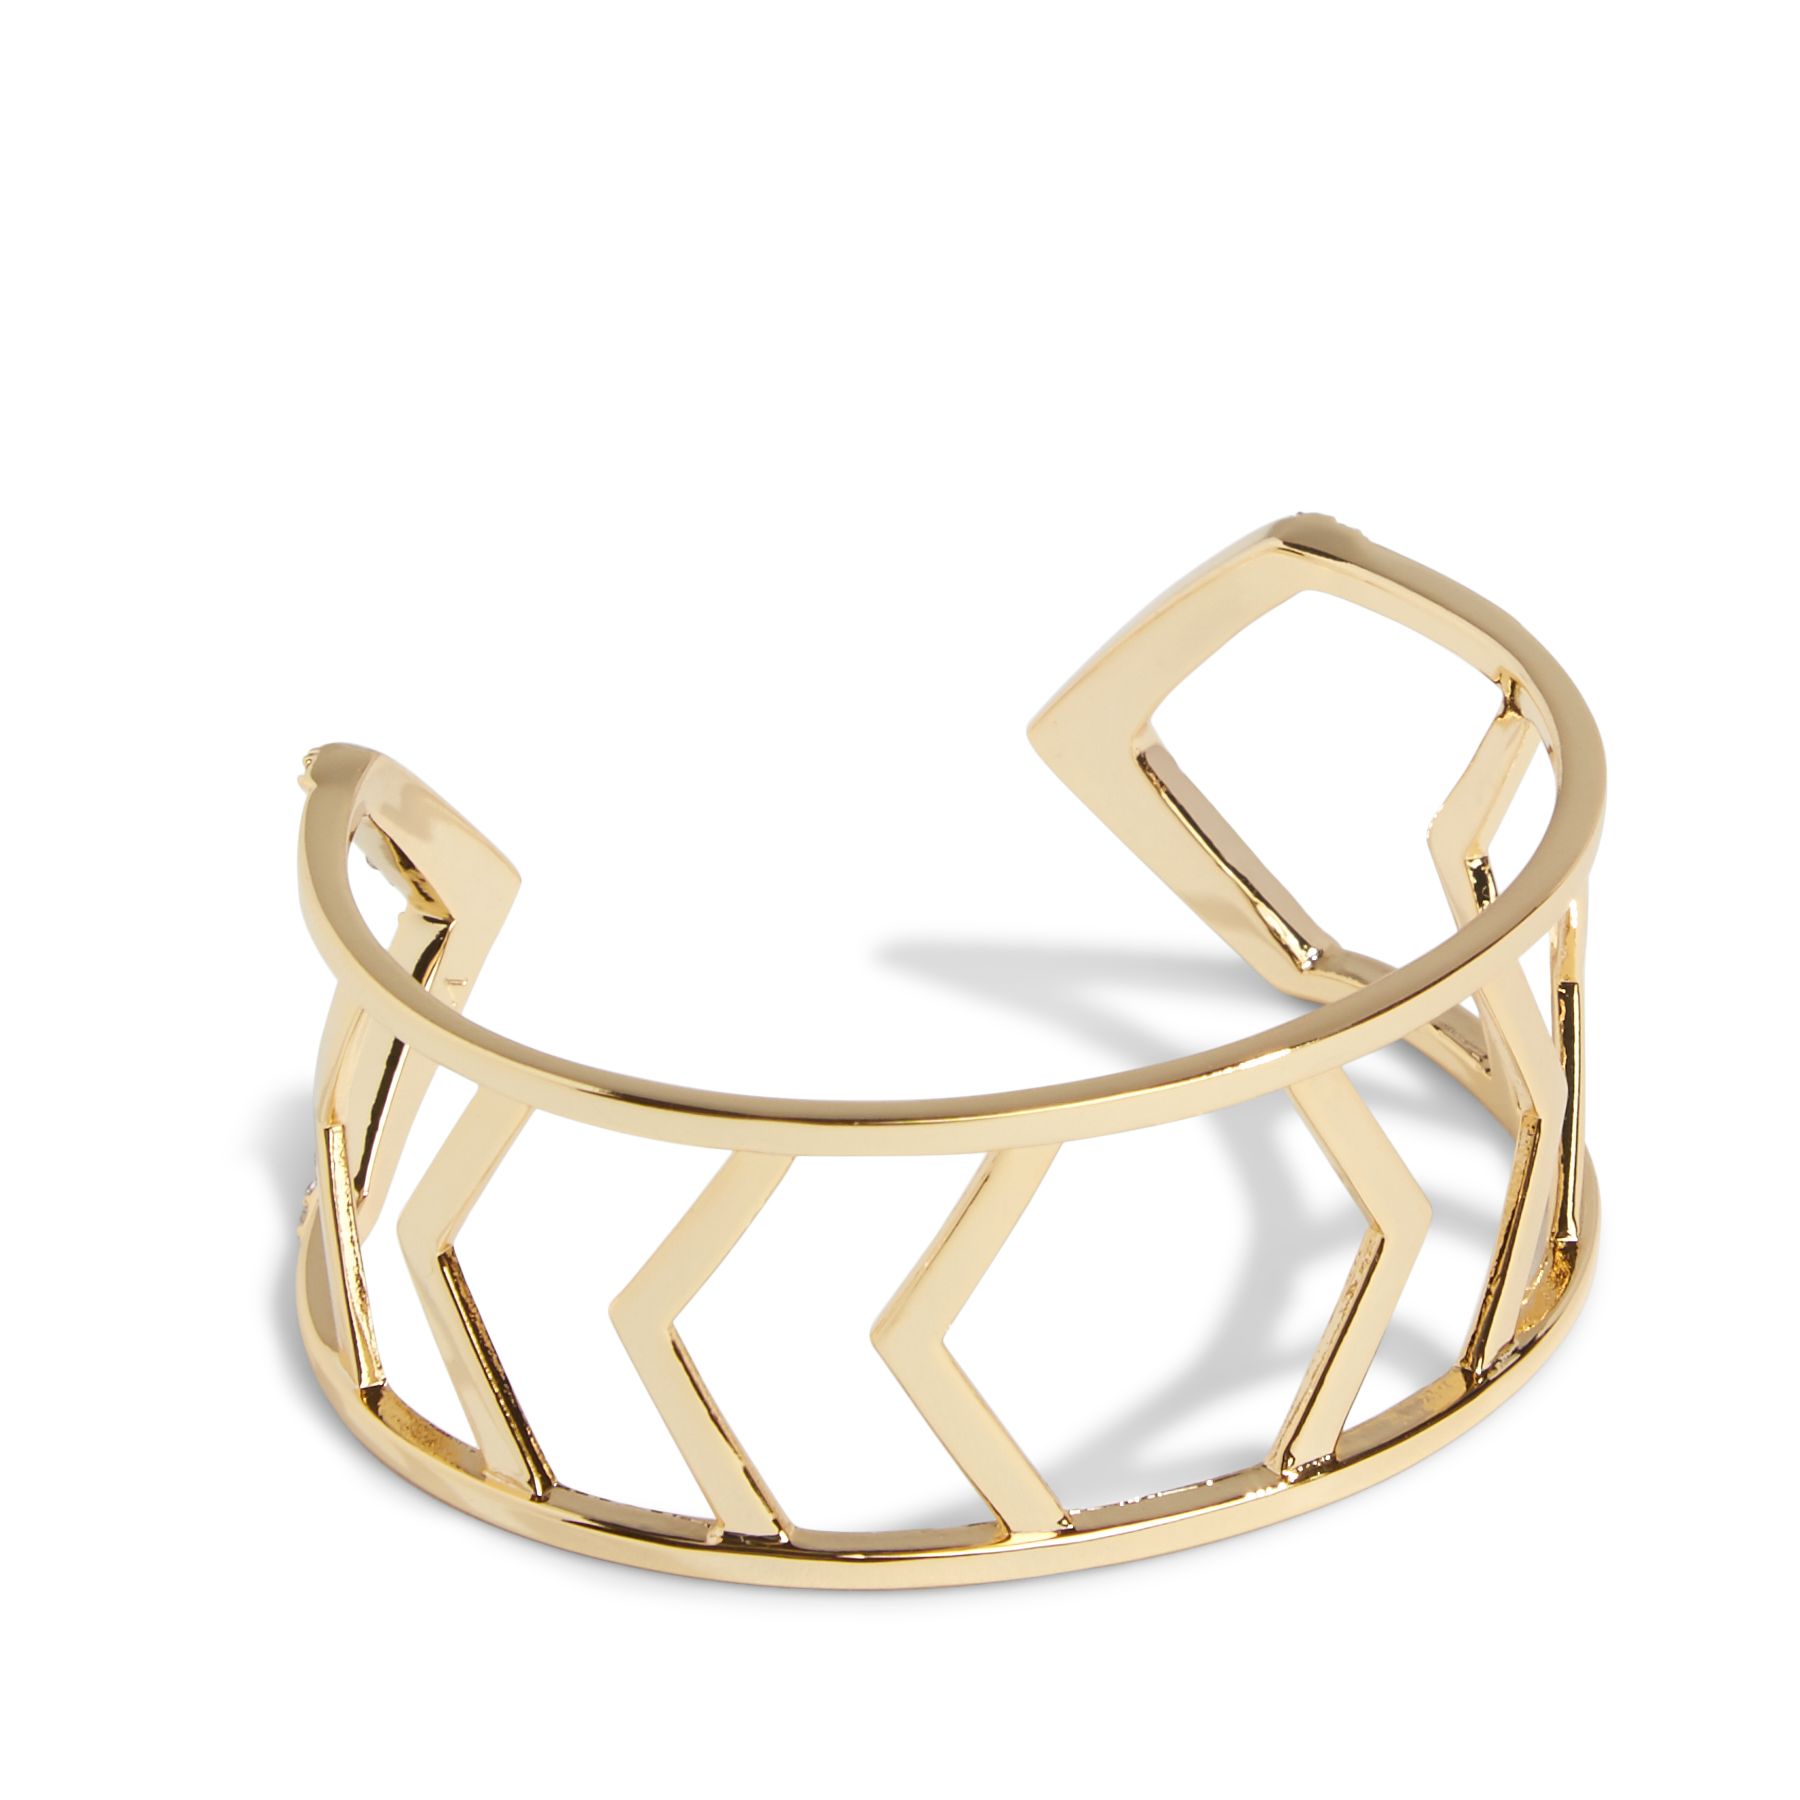 Vera Bradley Triangle Cuff Bracelet in Gold Tone 886003448854 | eBay